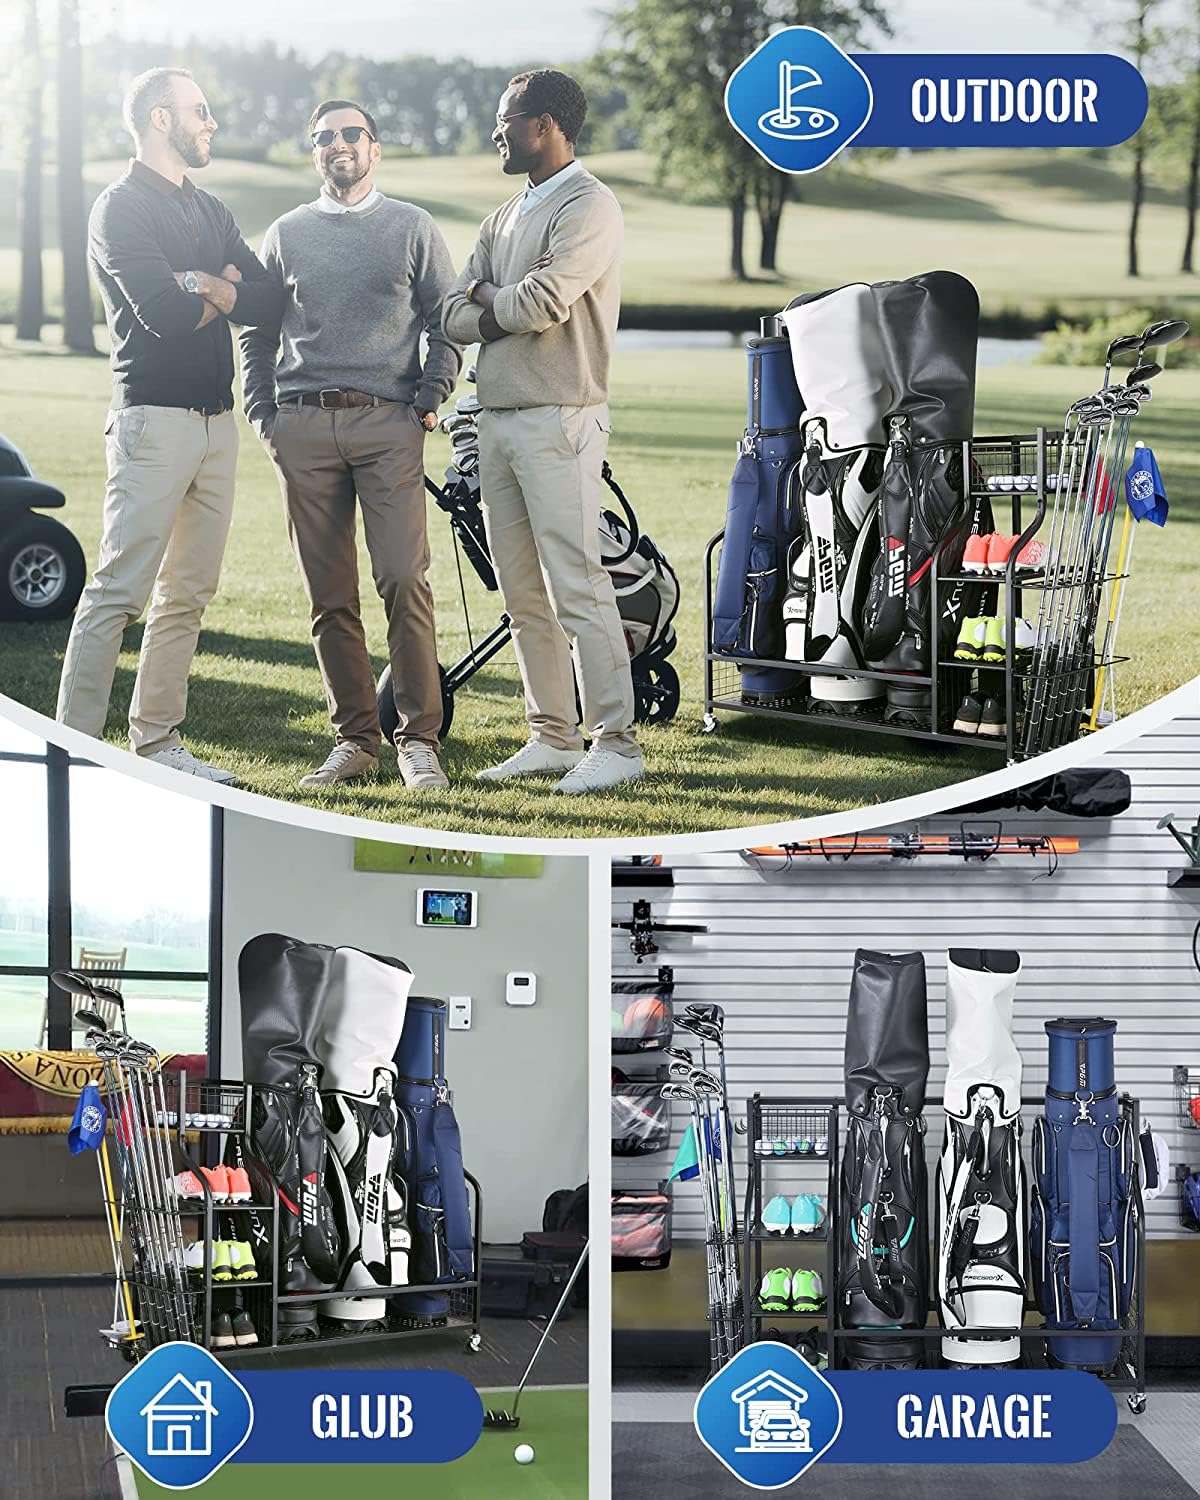 Mythinglogic 3 Golf Bags Storage Organizer-Extra Large Size Fits 3 Ful